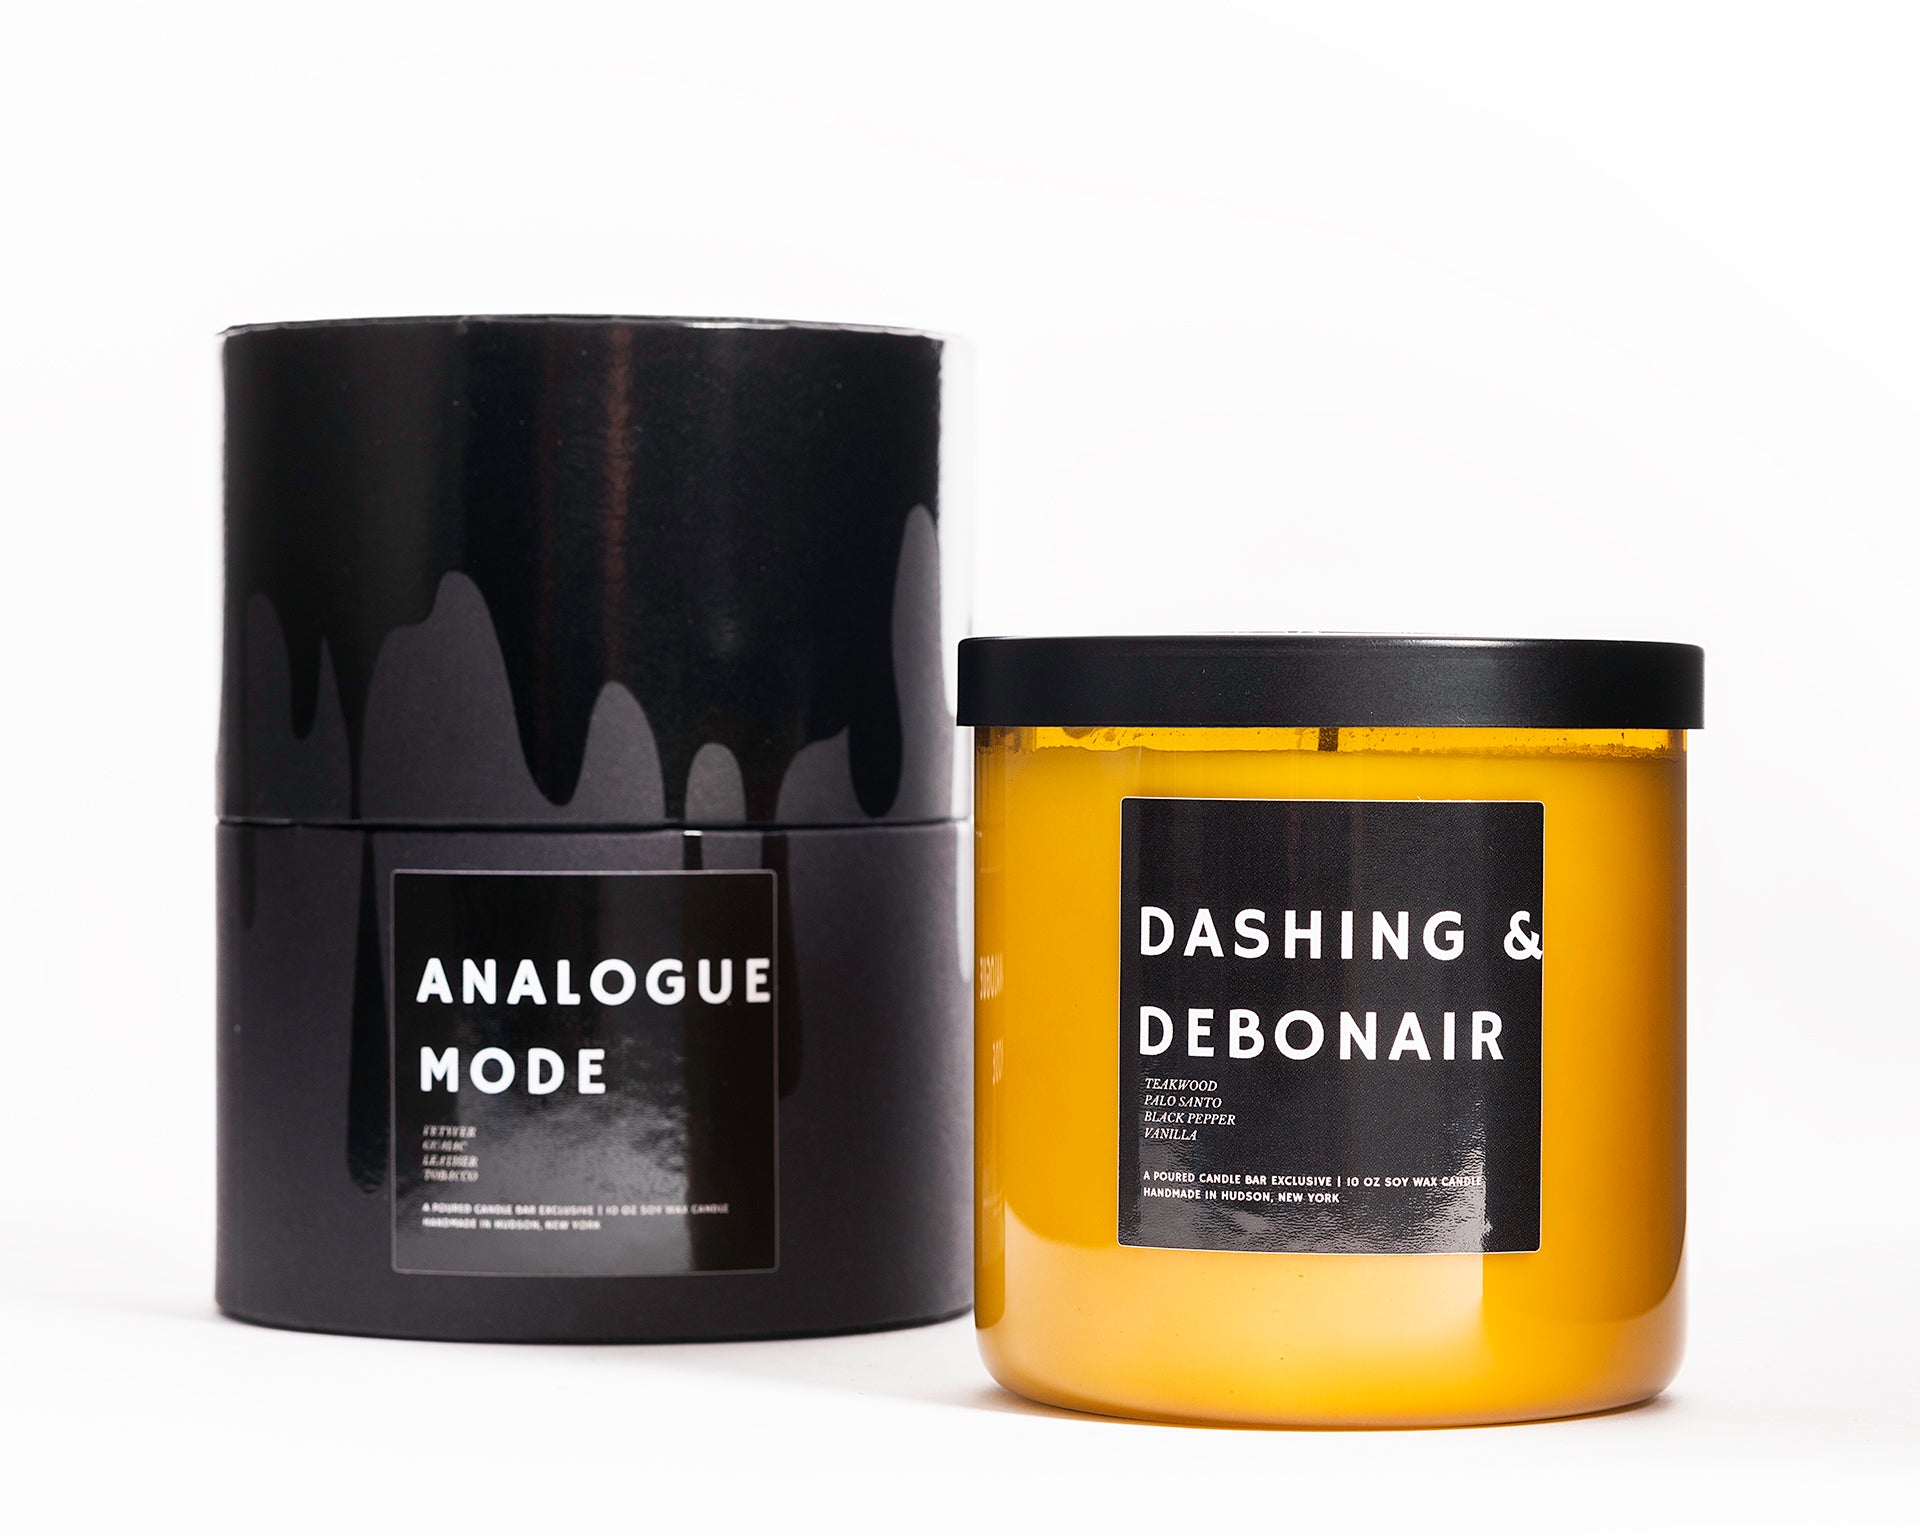 Dashing & Debonair - Poured Candle Bar